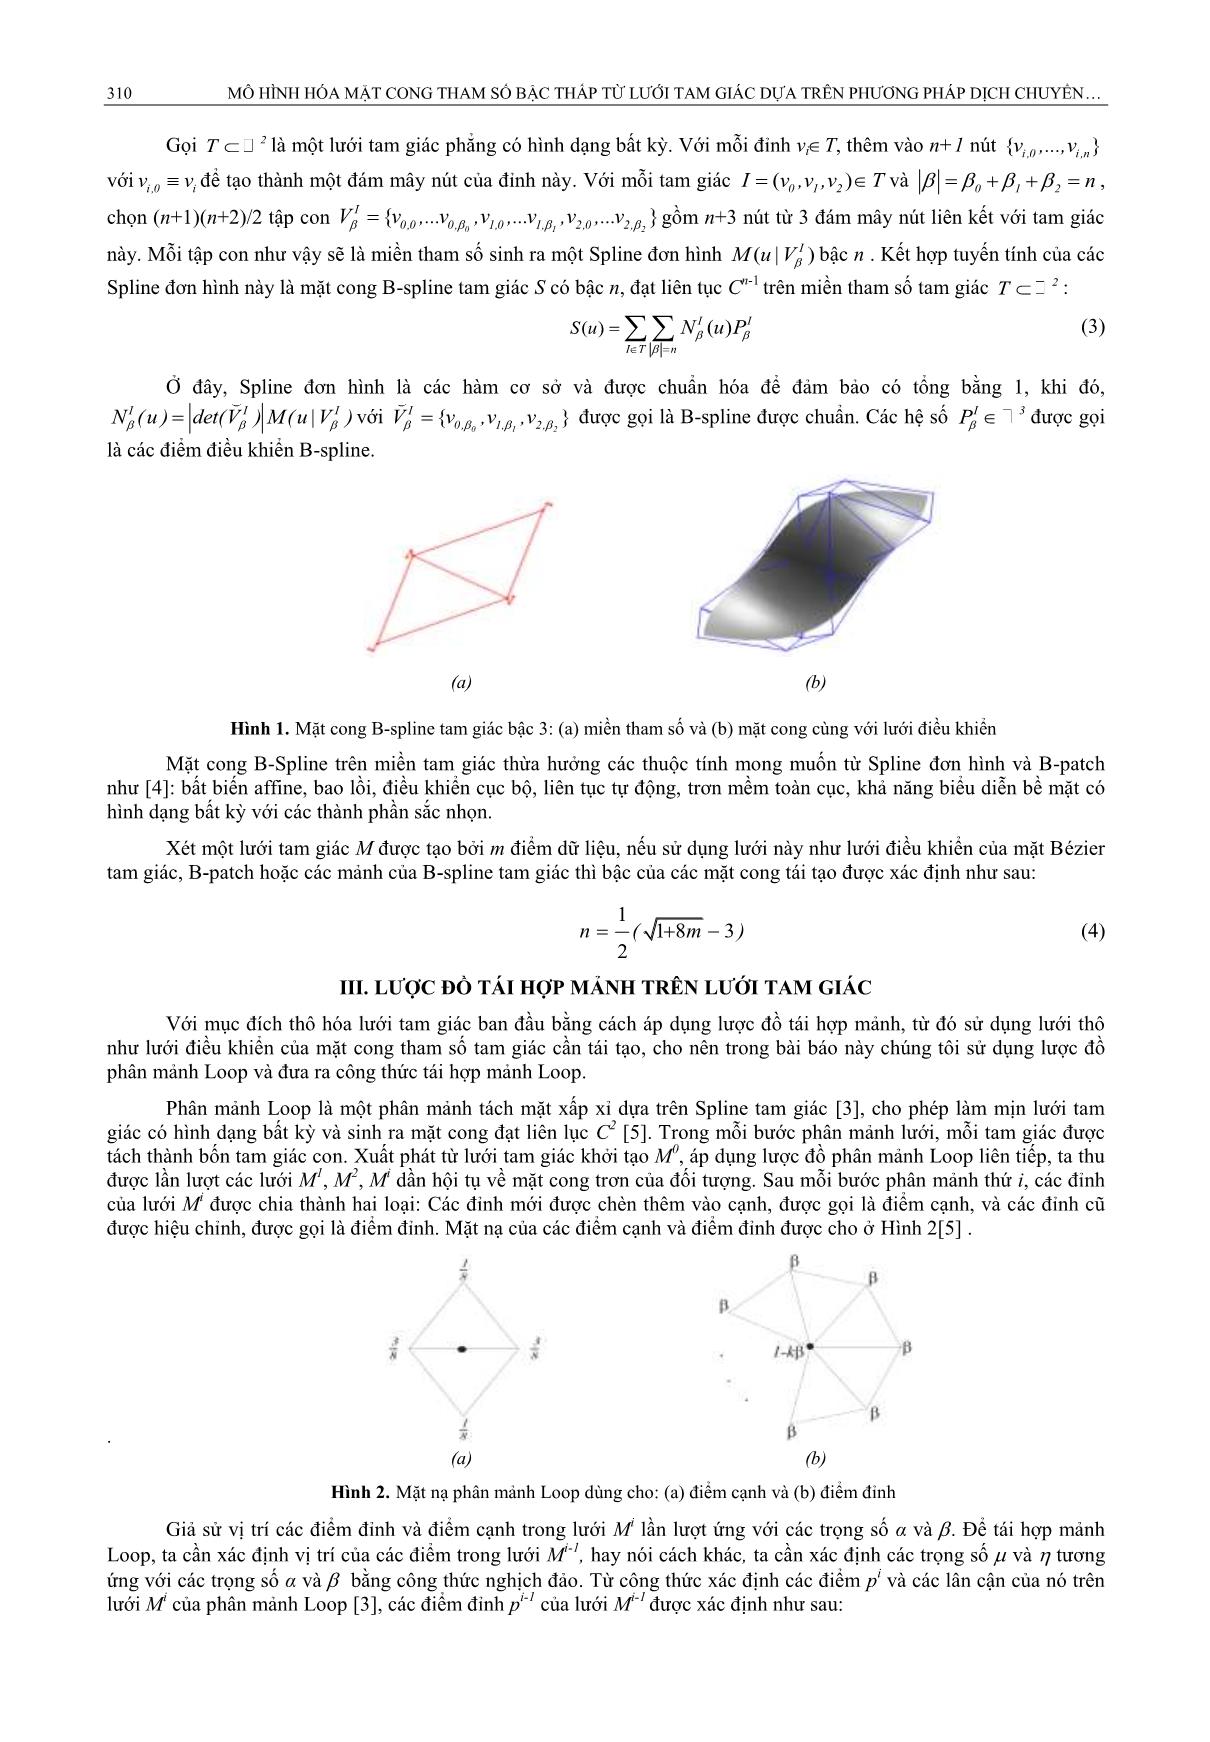 Mô hình hóa mặt cong tham số bậc thấp từ lưới tam giác dựa trên phương pháp dịch chuyển hình học cục bộ trang 3